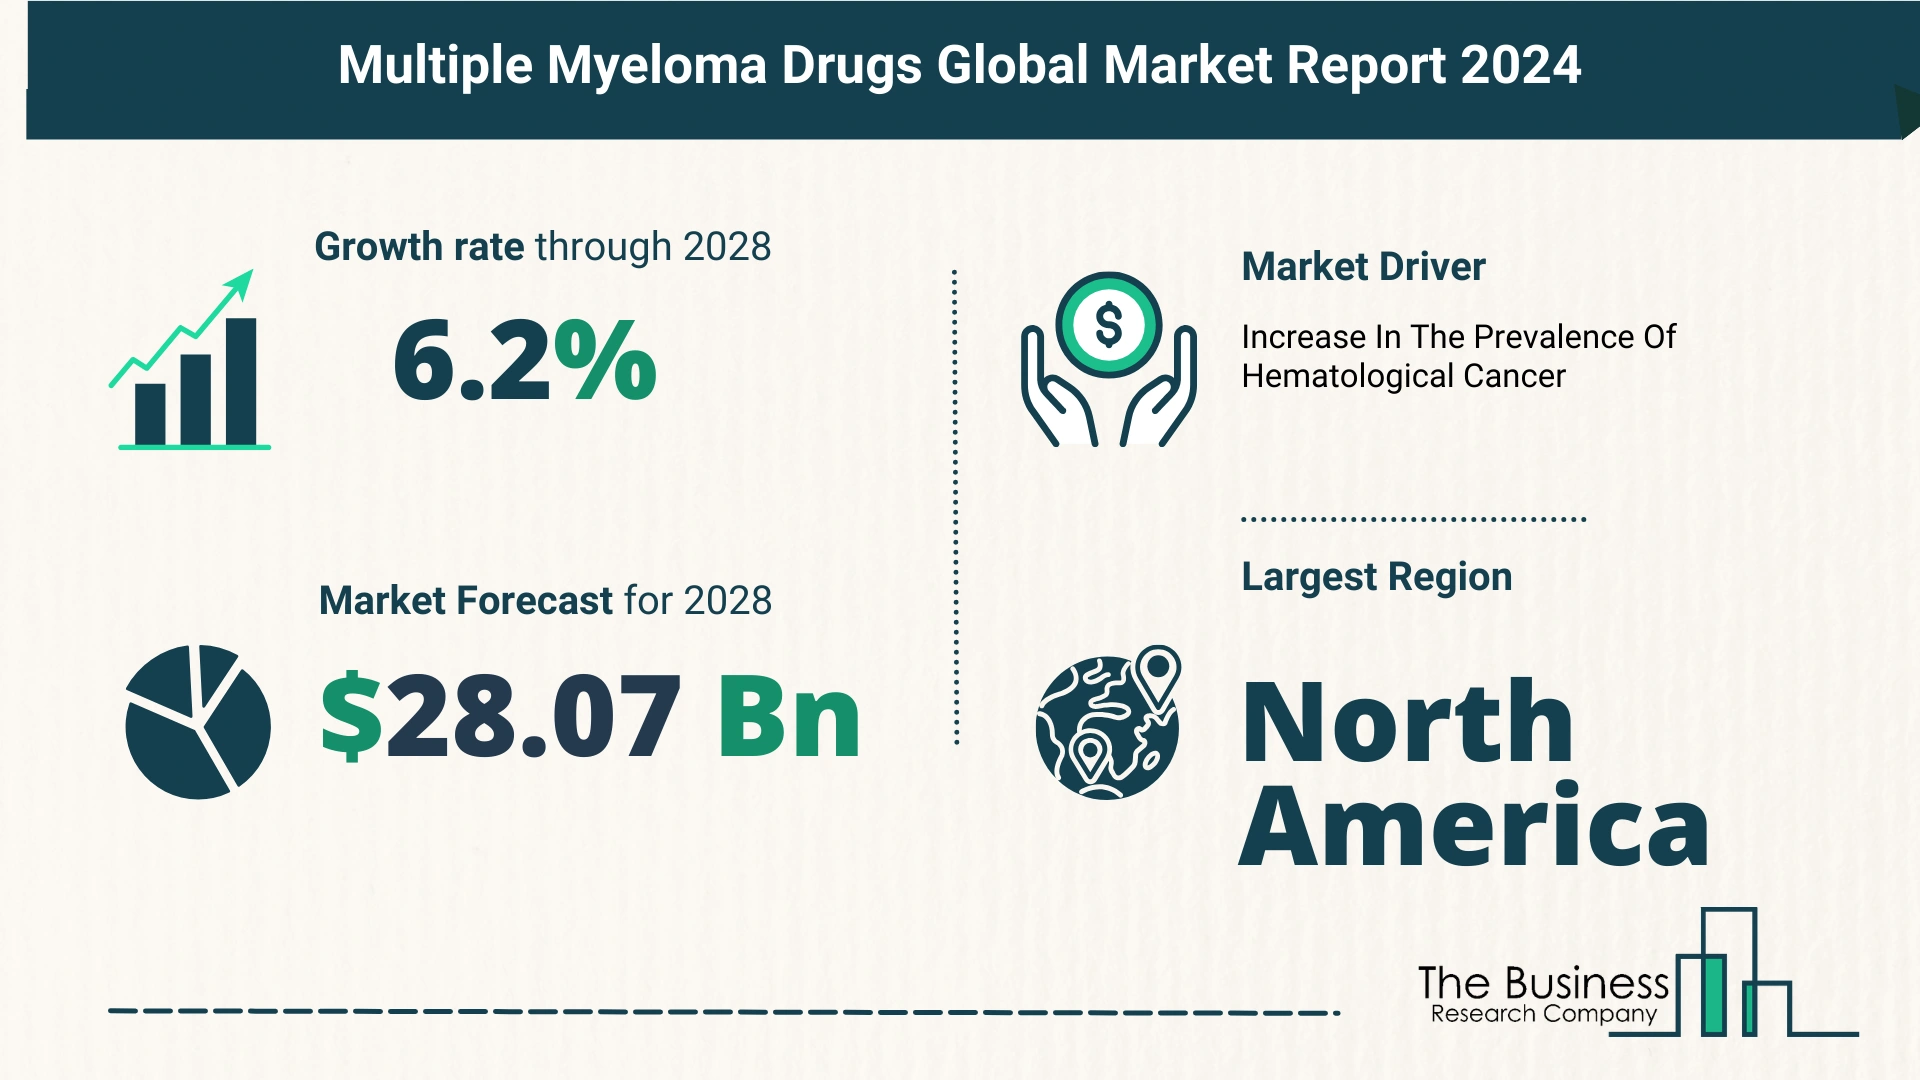 Global Multiple Myeloma Drugs Market Size